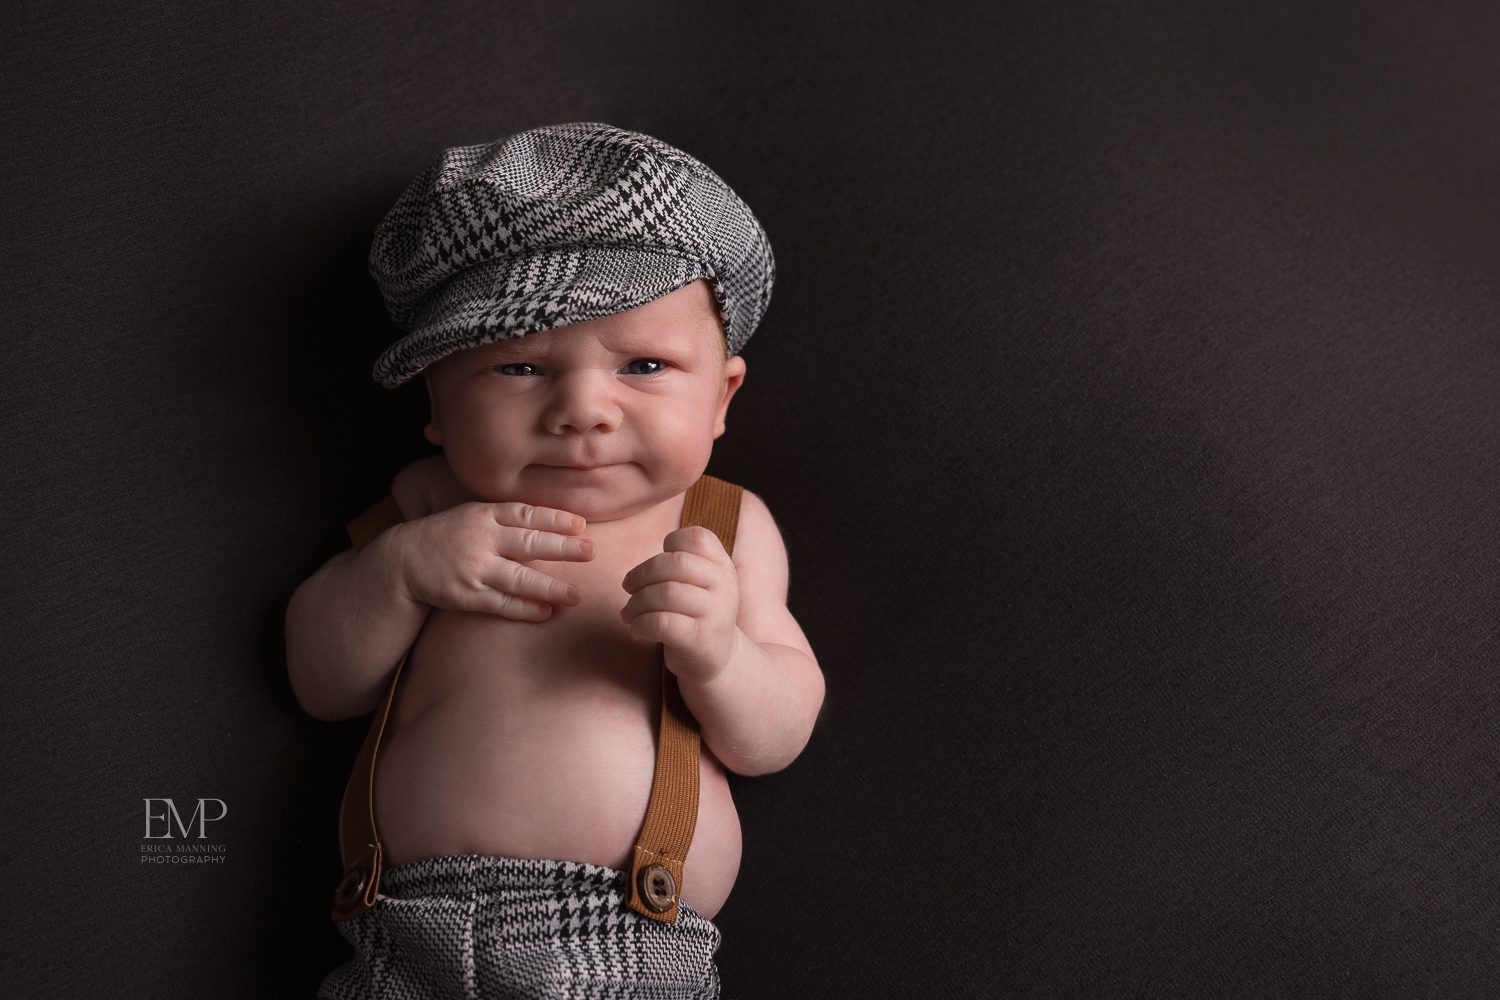 Newborn baby boy in suspenders and cap